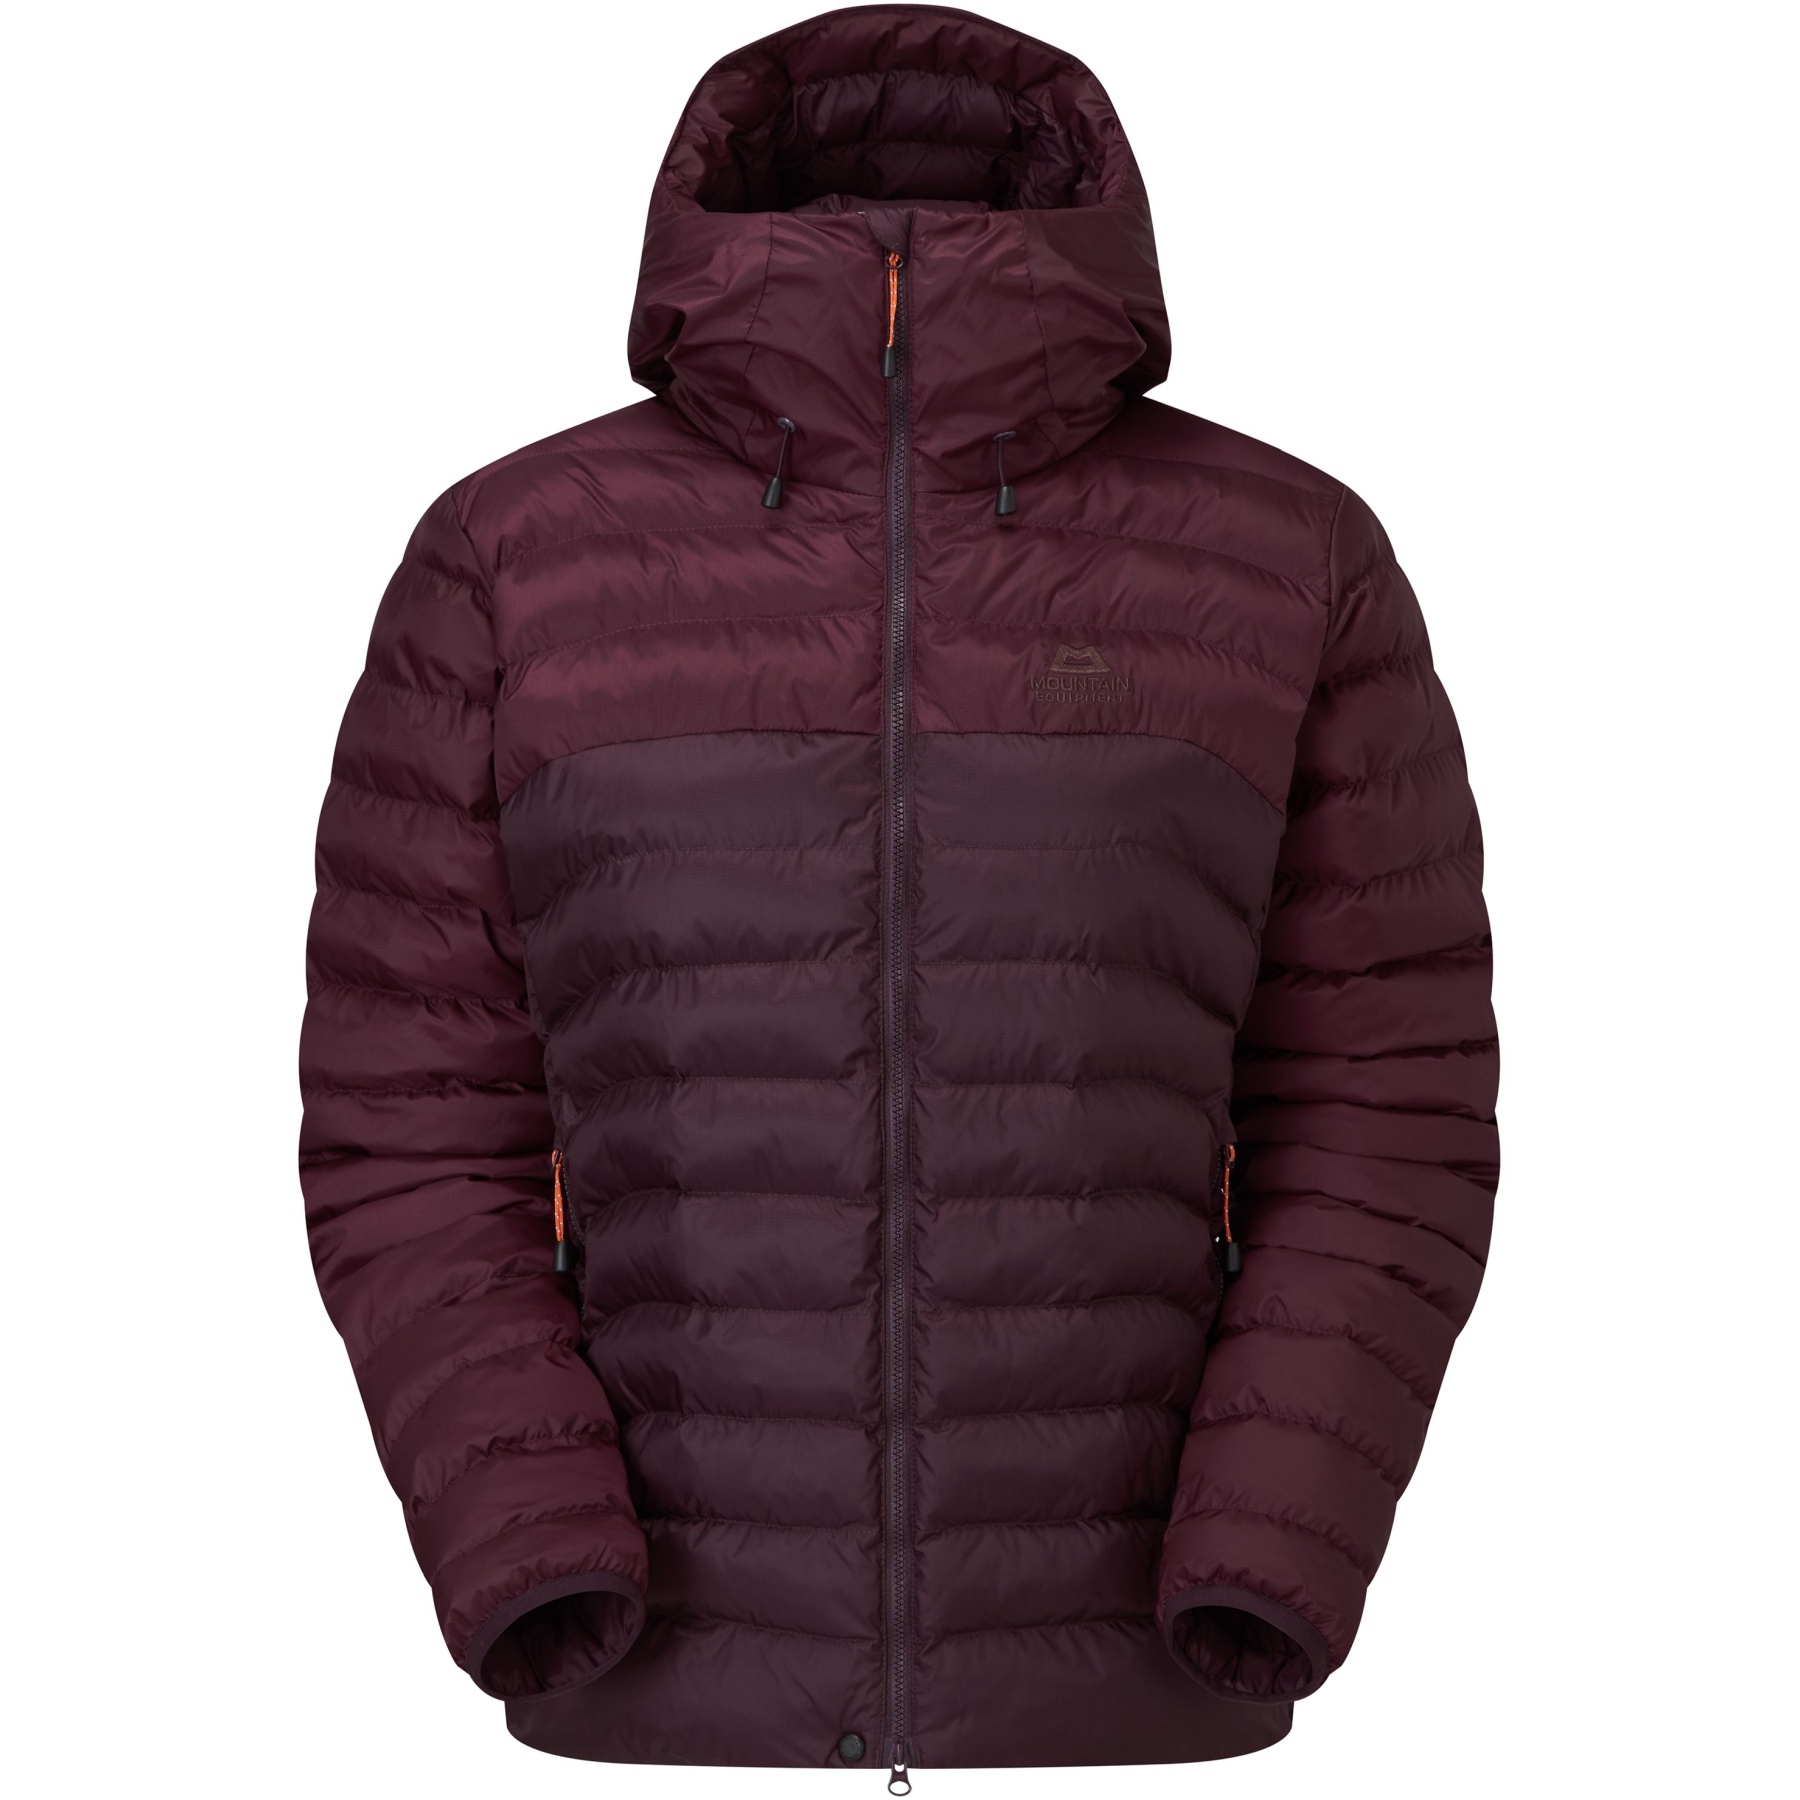 Produktbild von Mountain Equipment Superflux Jacke Damen ME-005770 - raisin/mulberry